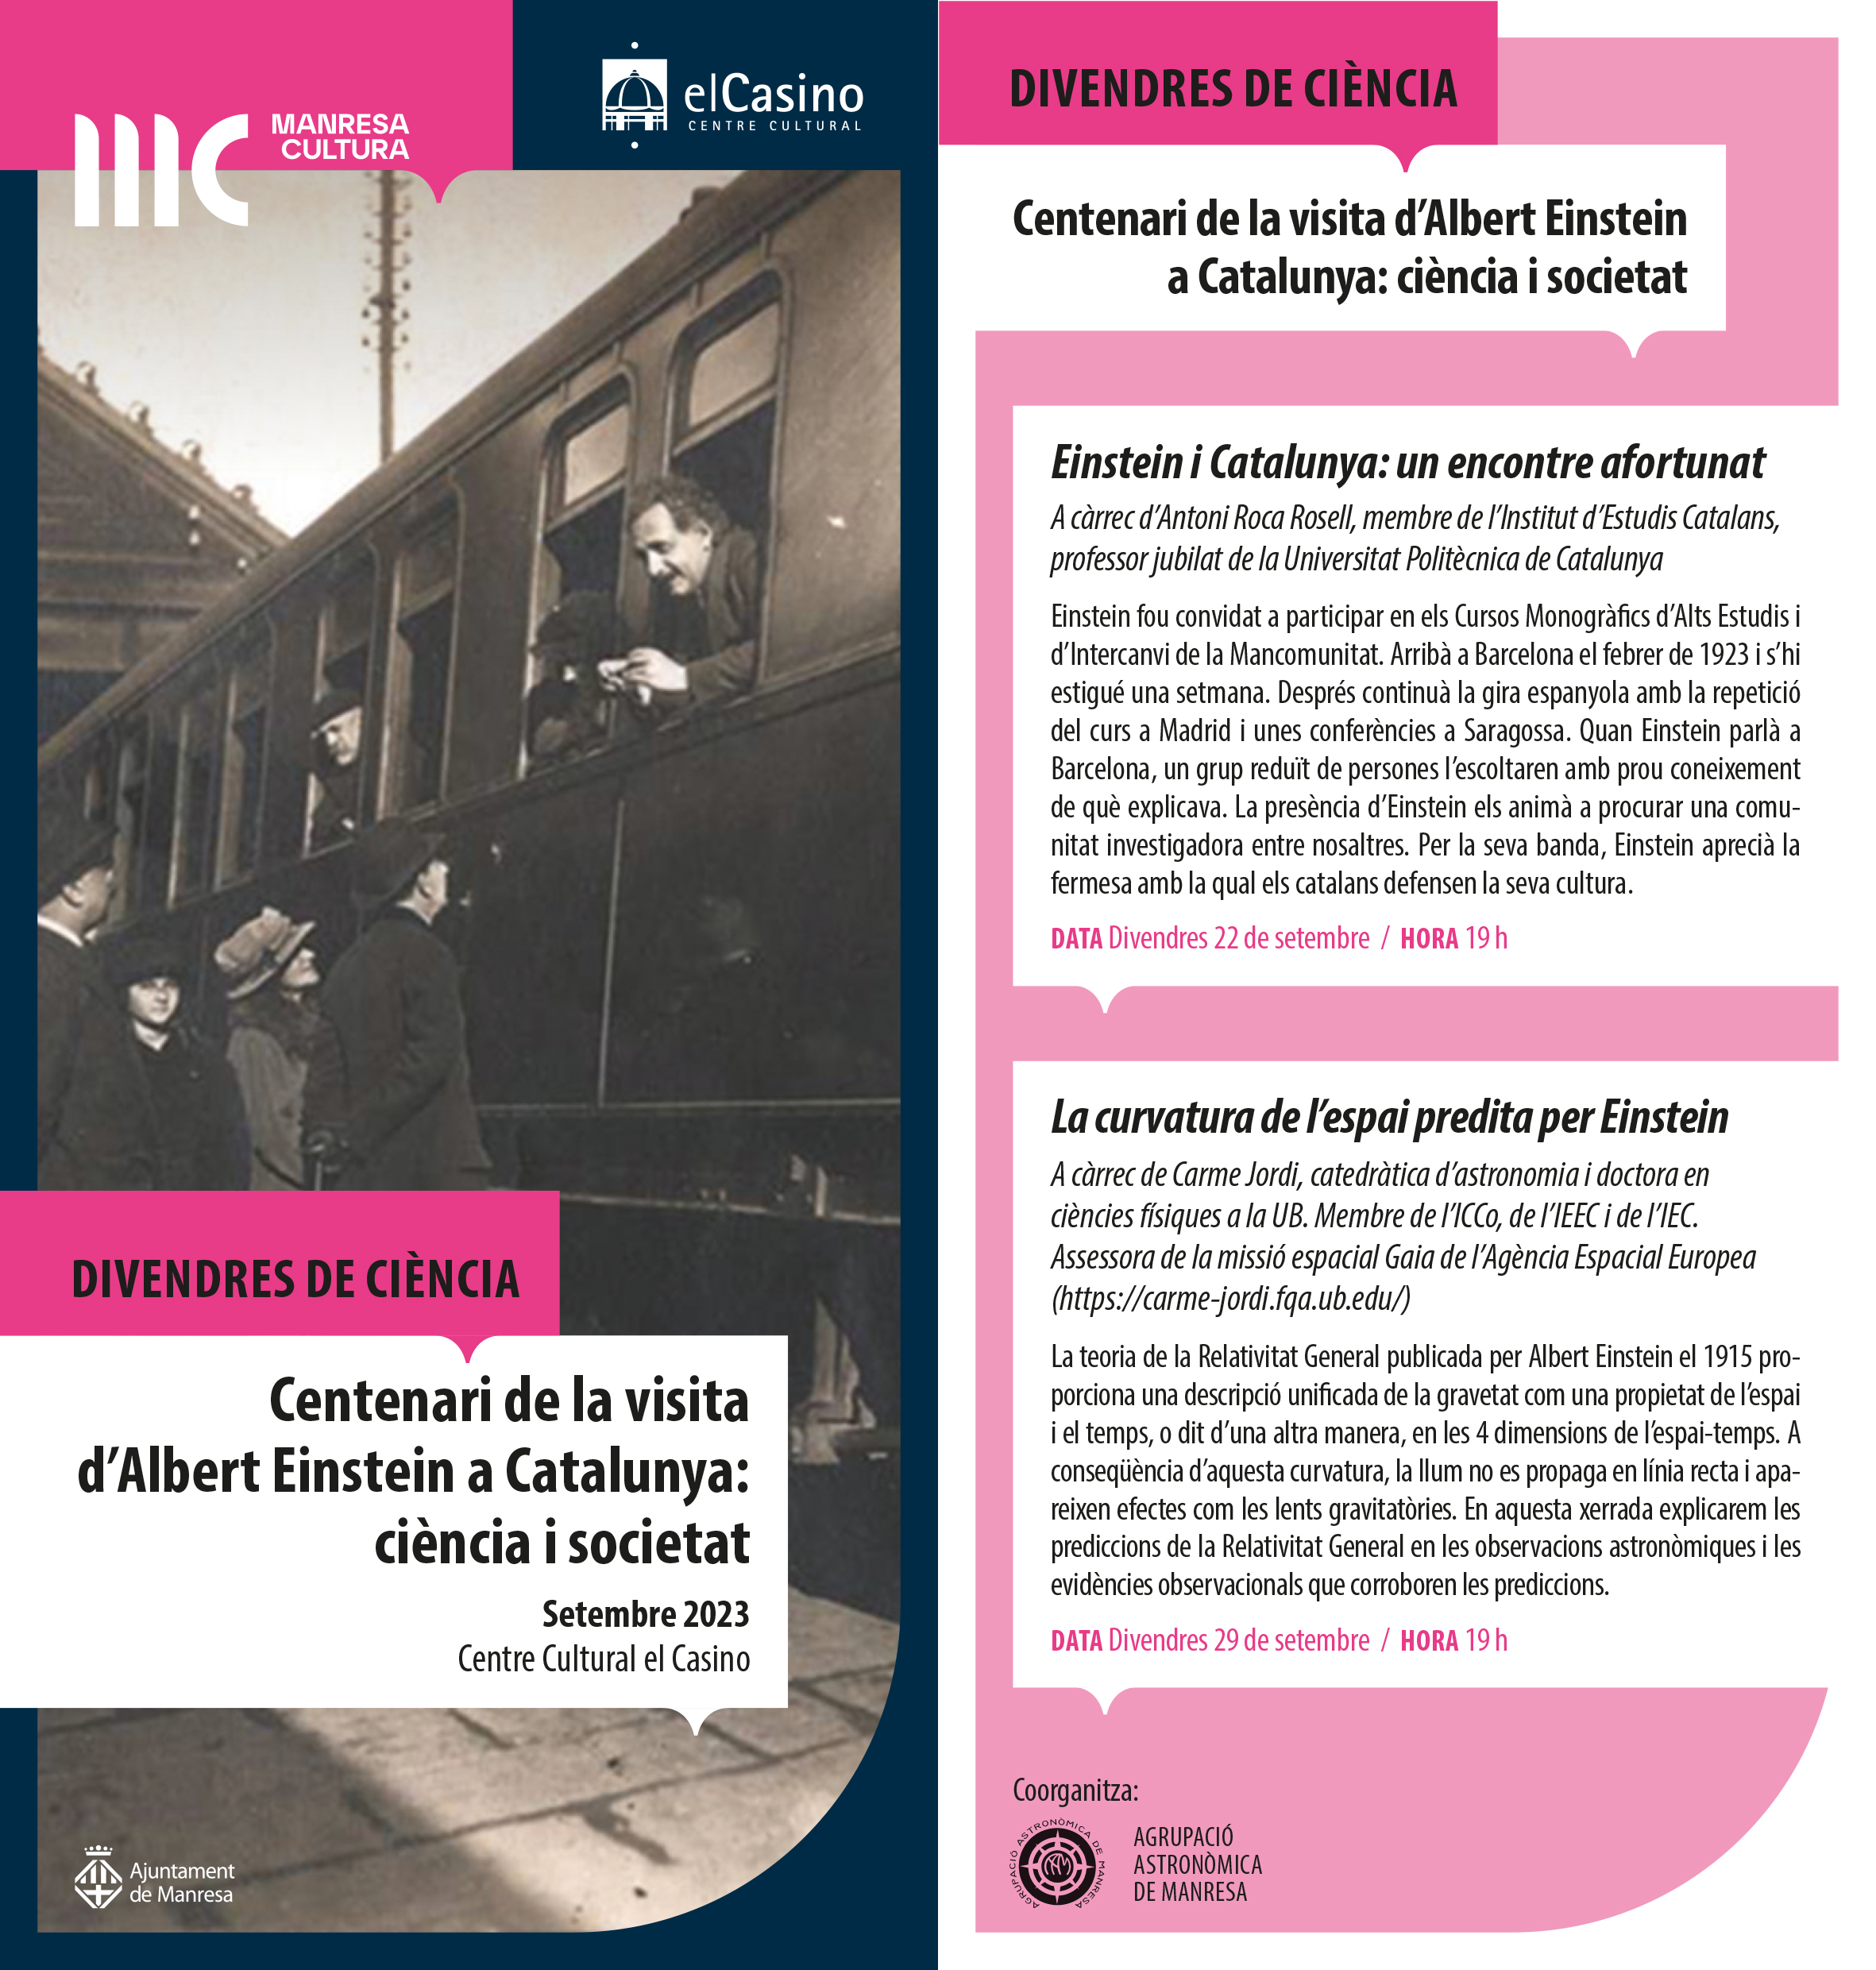 Divendres de Ciència organitza dues xerrades sobre el centenari de la visita d'Albert Einstein a Catalunya